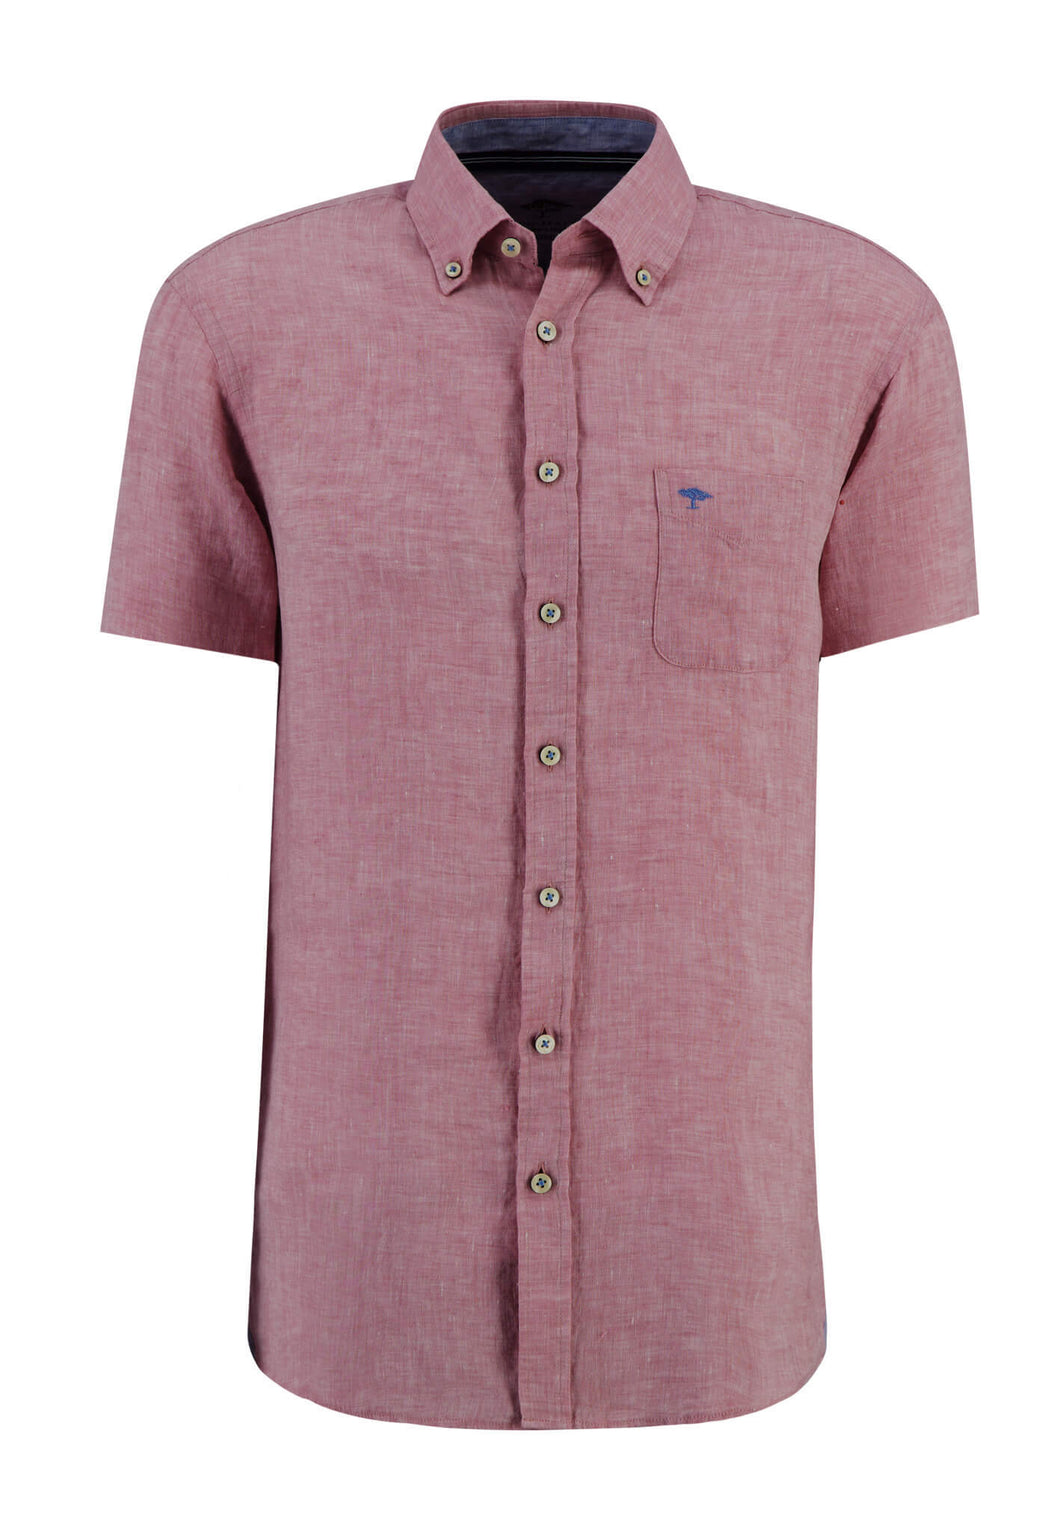 New Fynch Hatton Pink Linen Short Sleeve Shirt